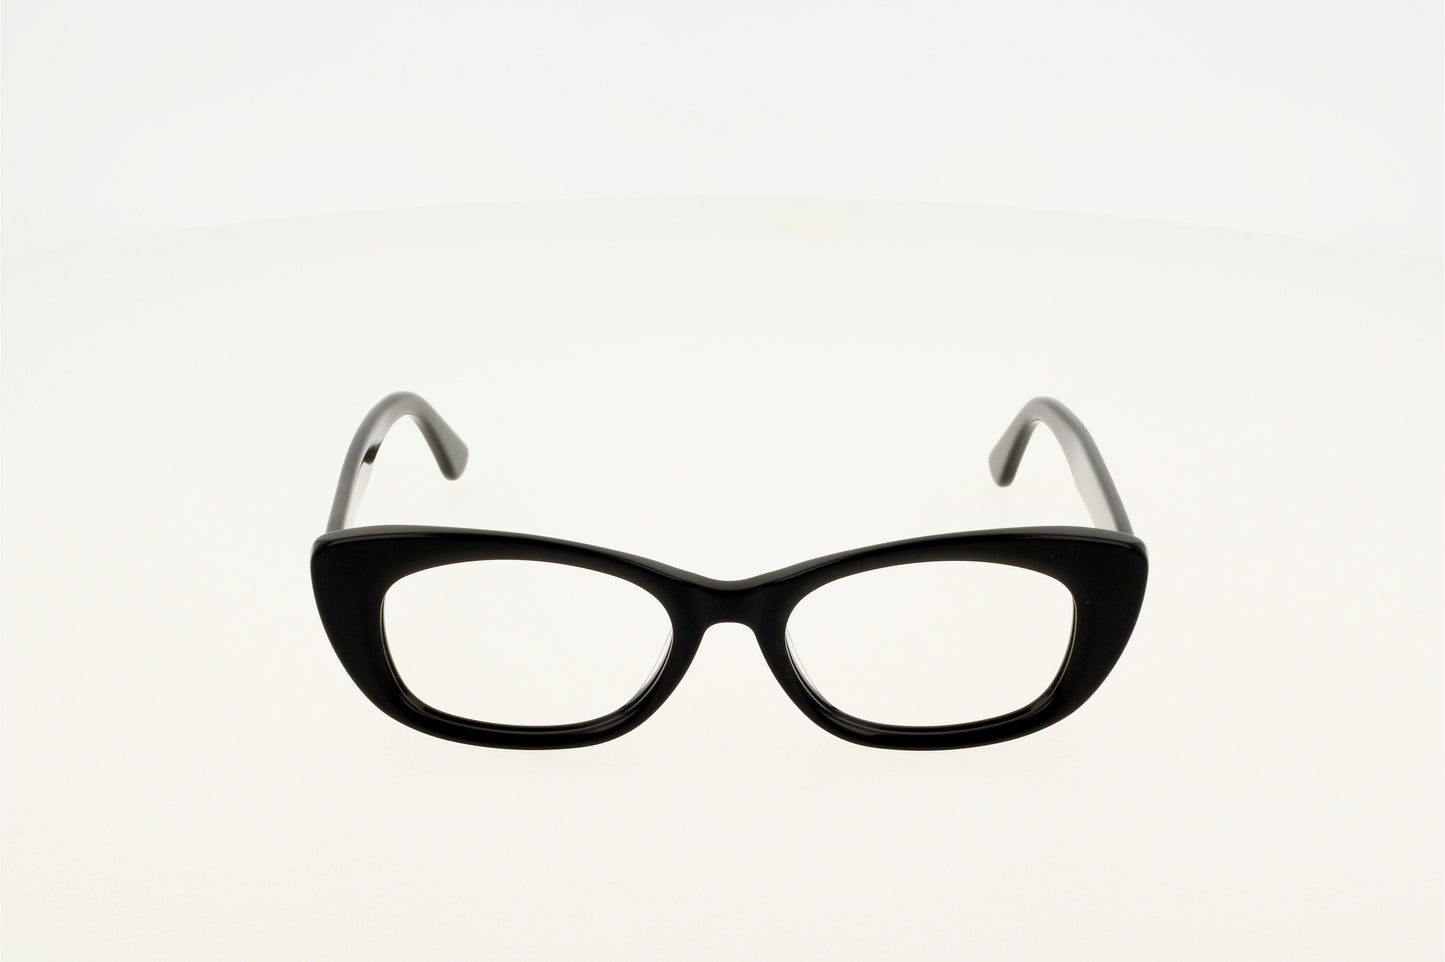 Originel eyewear France vous propose une lunette tendance noire en acétate épais.